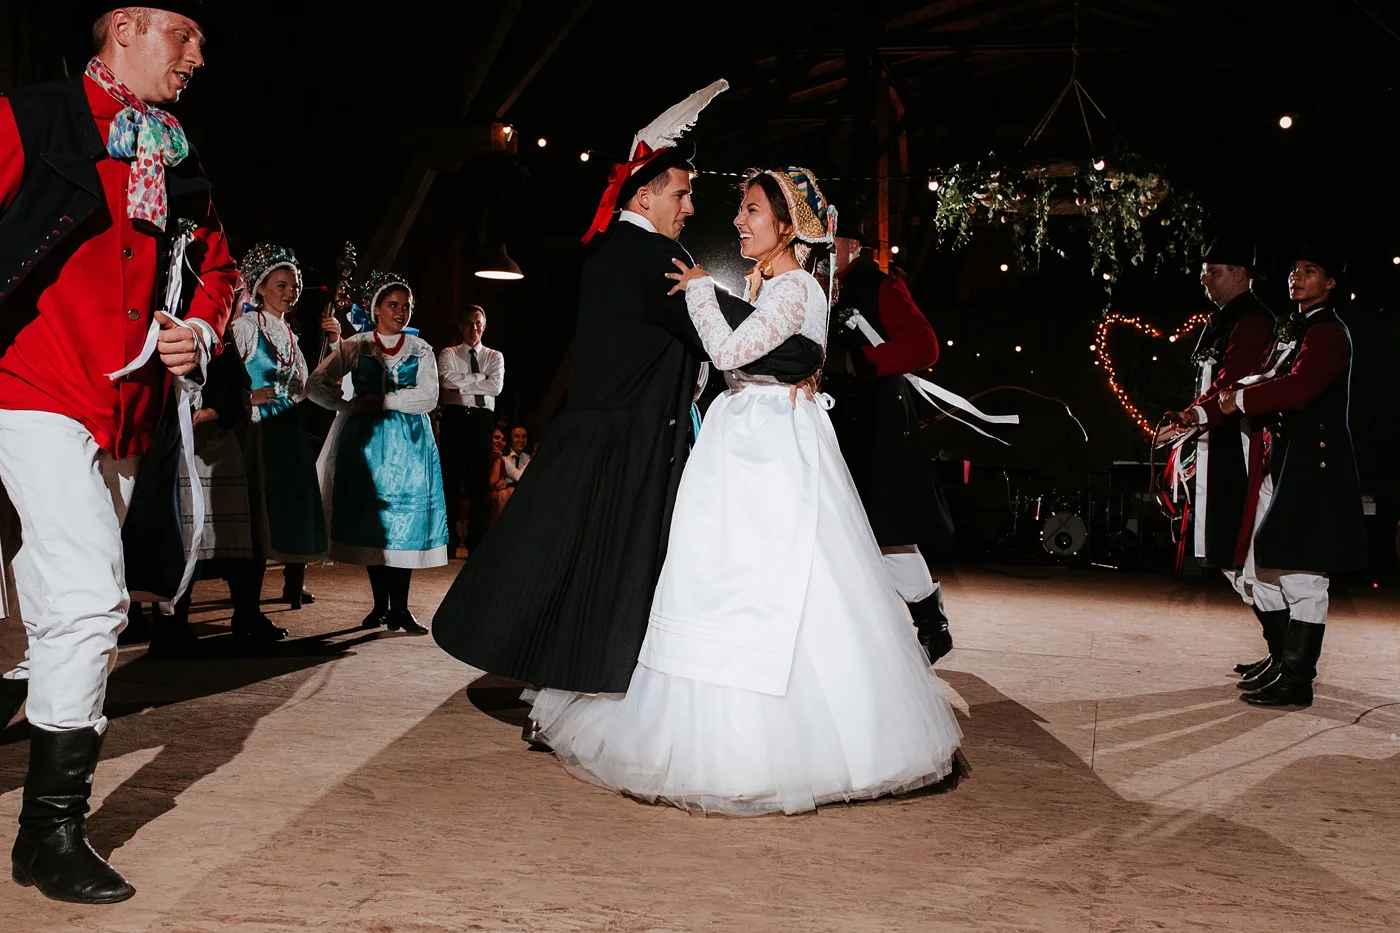 Dominika & Aleksander - Rustykalne wesele w stodole - Baborówko 141